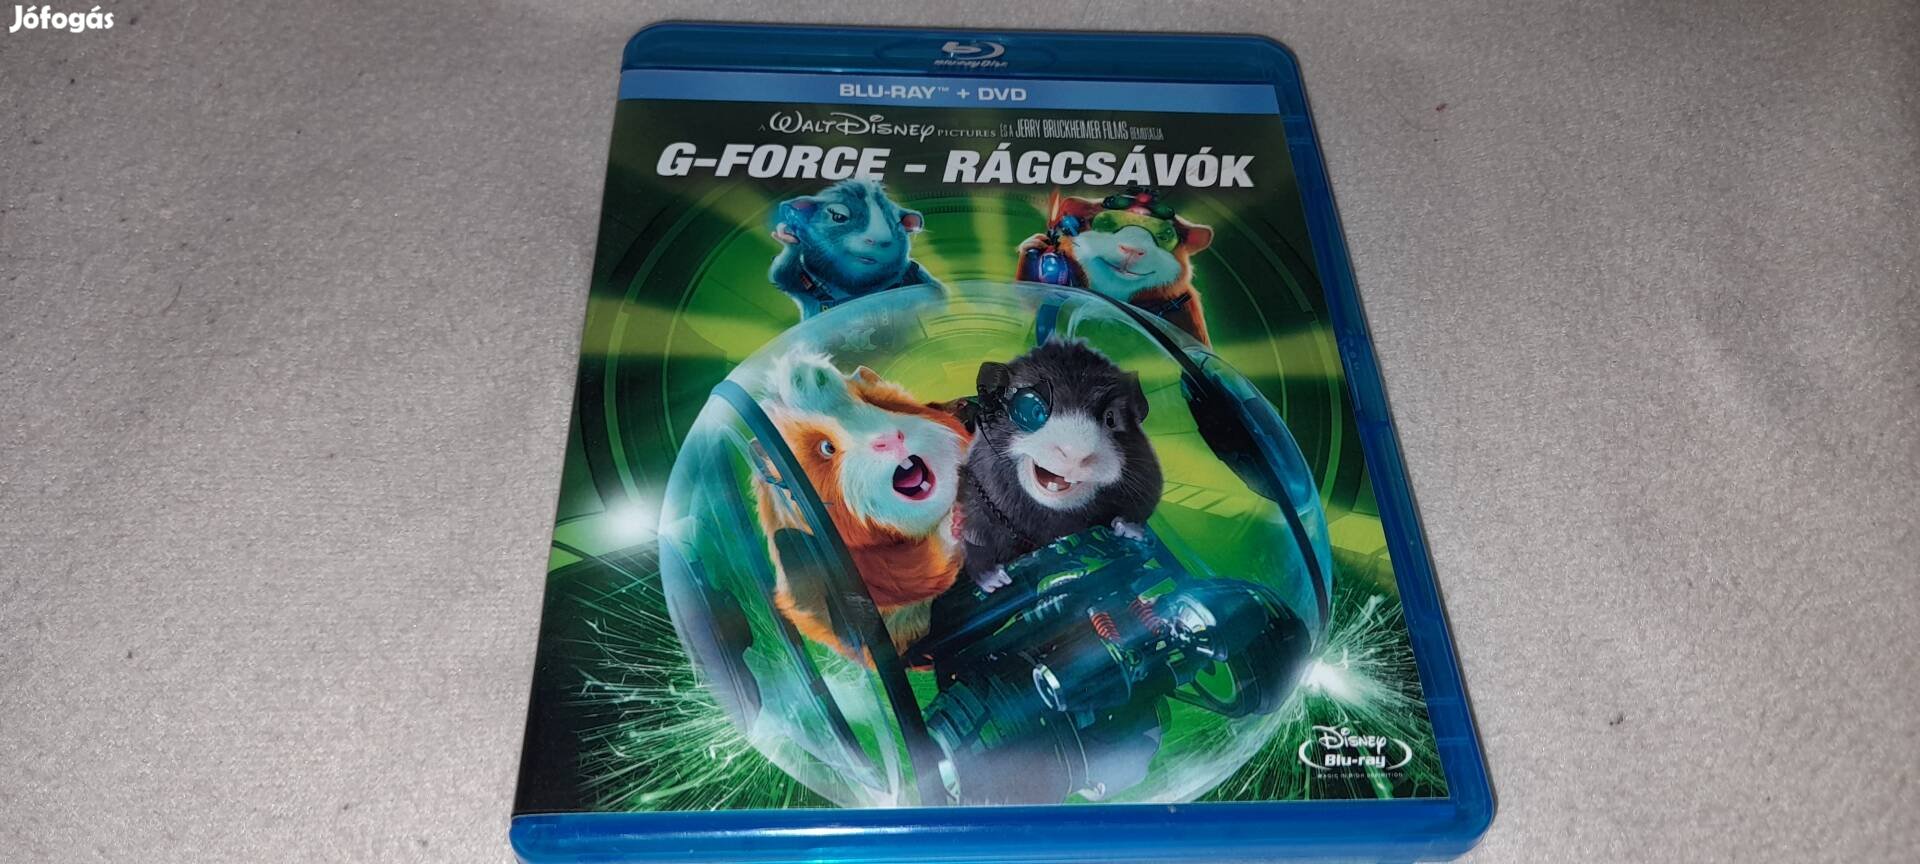 G-Force - Rágcsávók 2 lemezes Blu-ray + DVD Magyar Szinkronos Blu-ray 